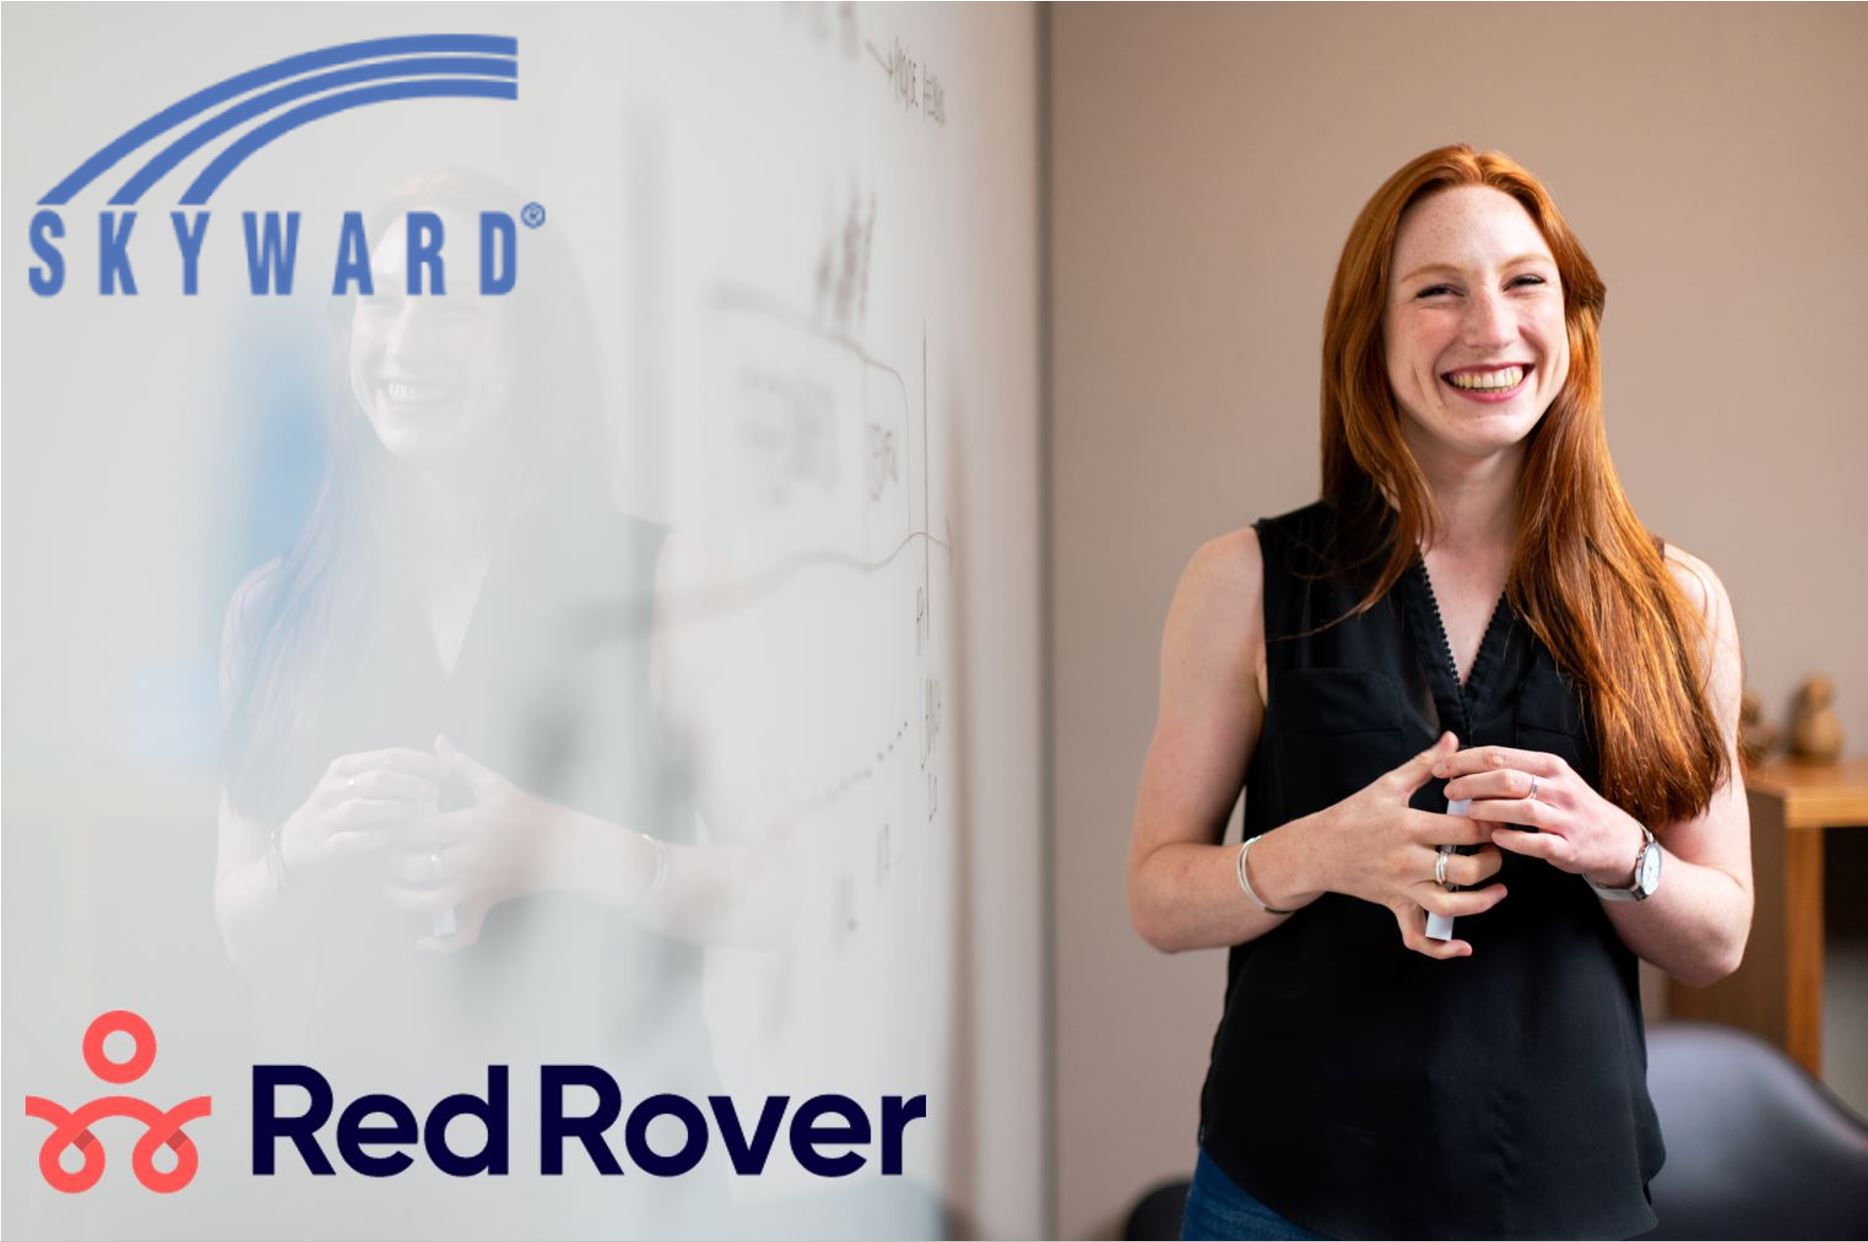 Skyward and Red Rover Logos + teacher